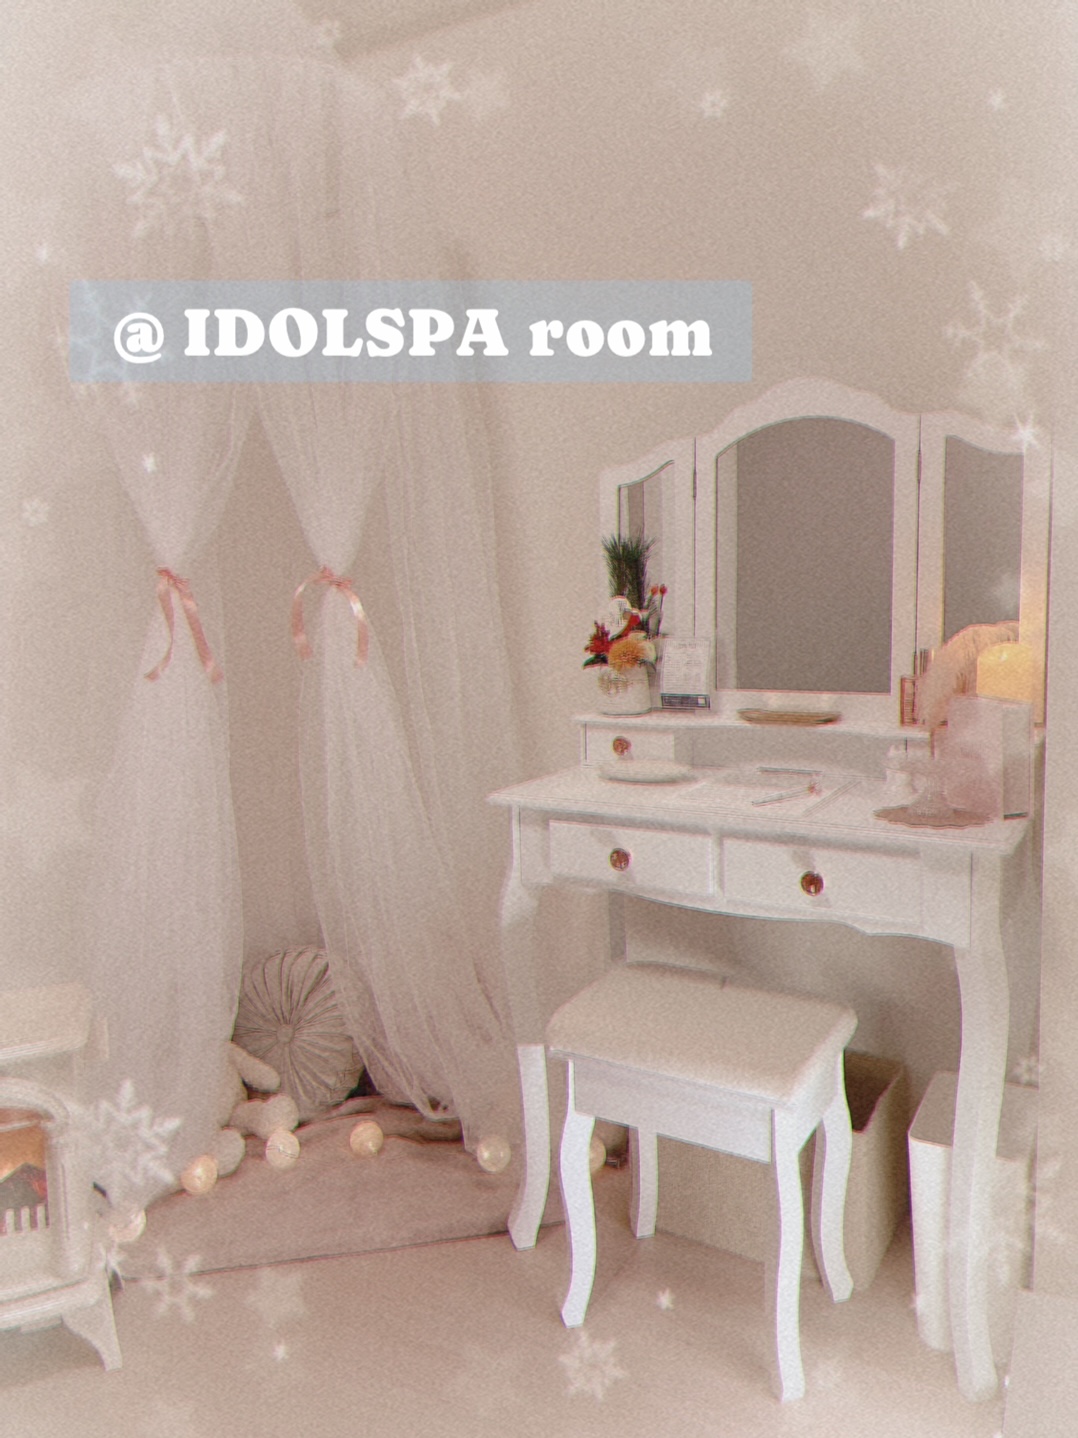 IDOLSPA「アイドルスパ」の「待機所」画像1枚目